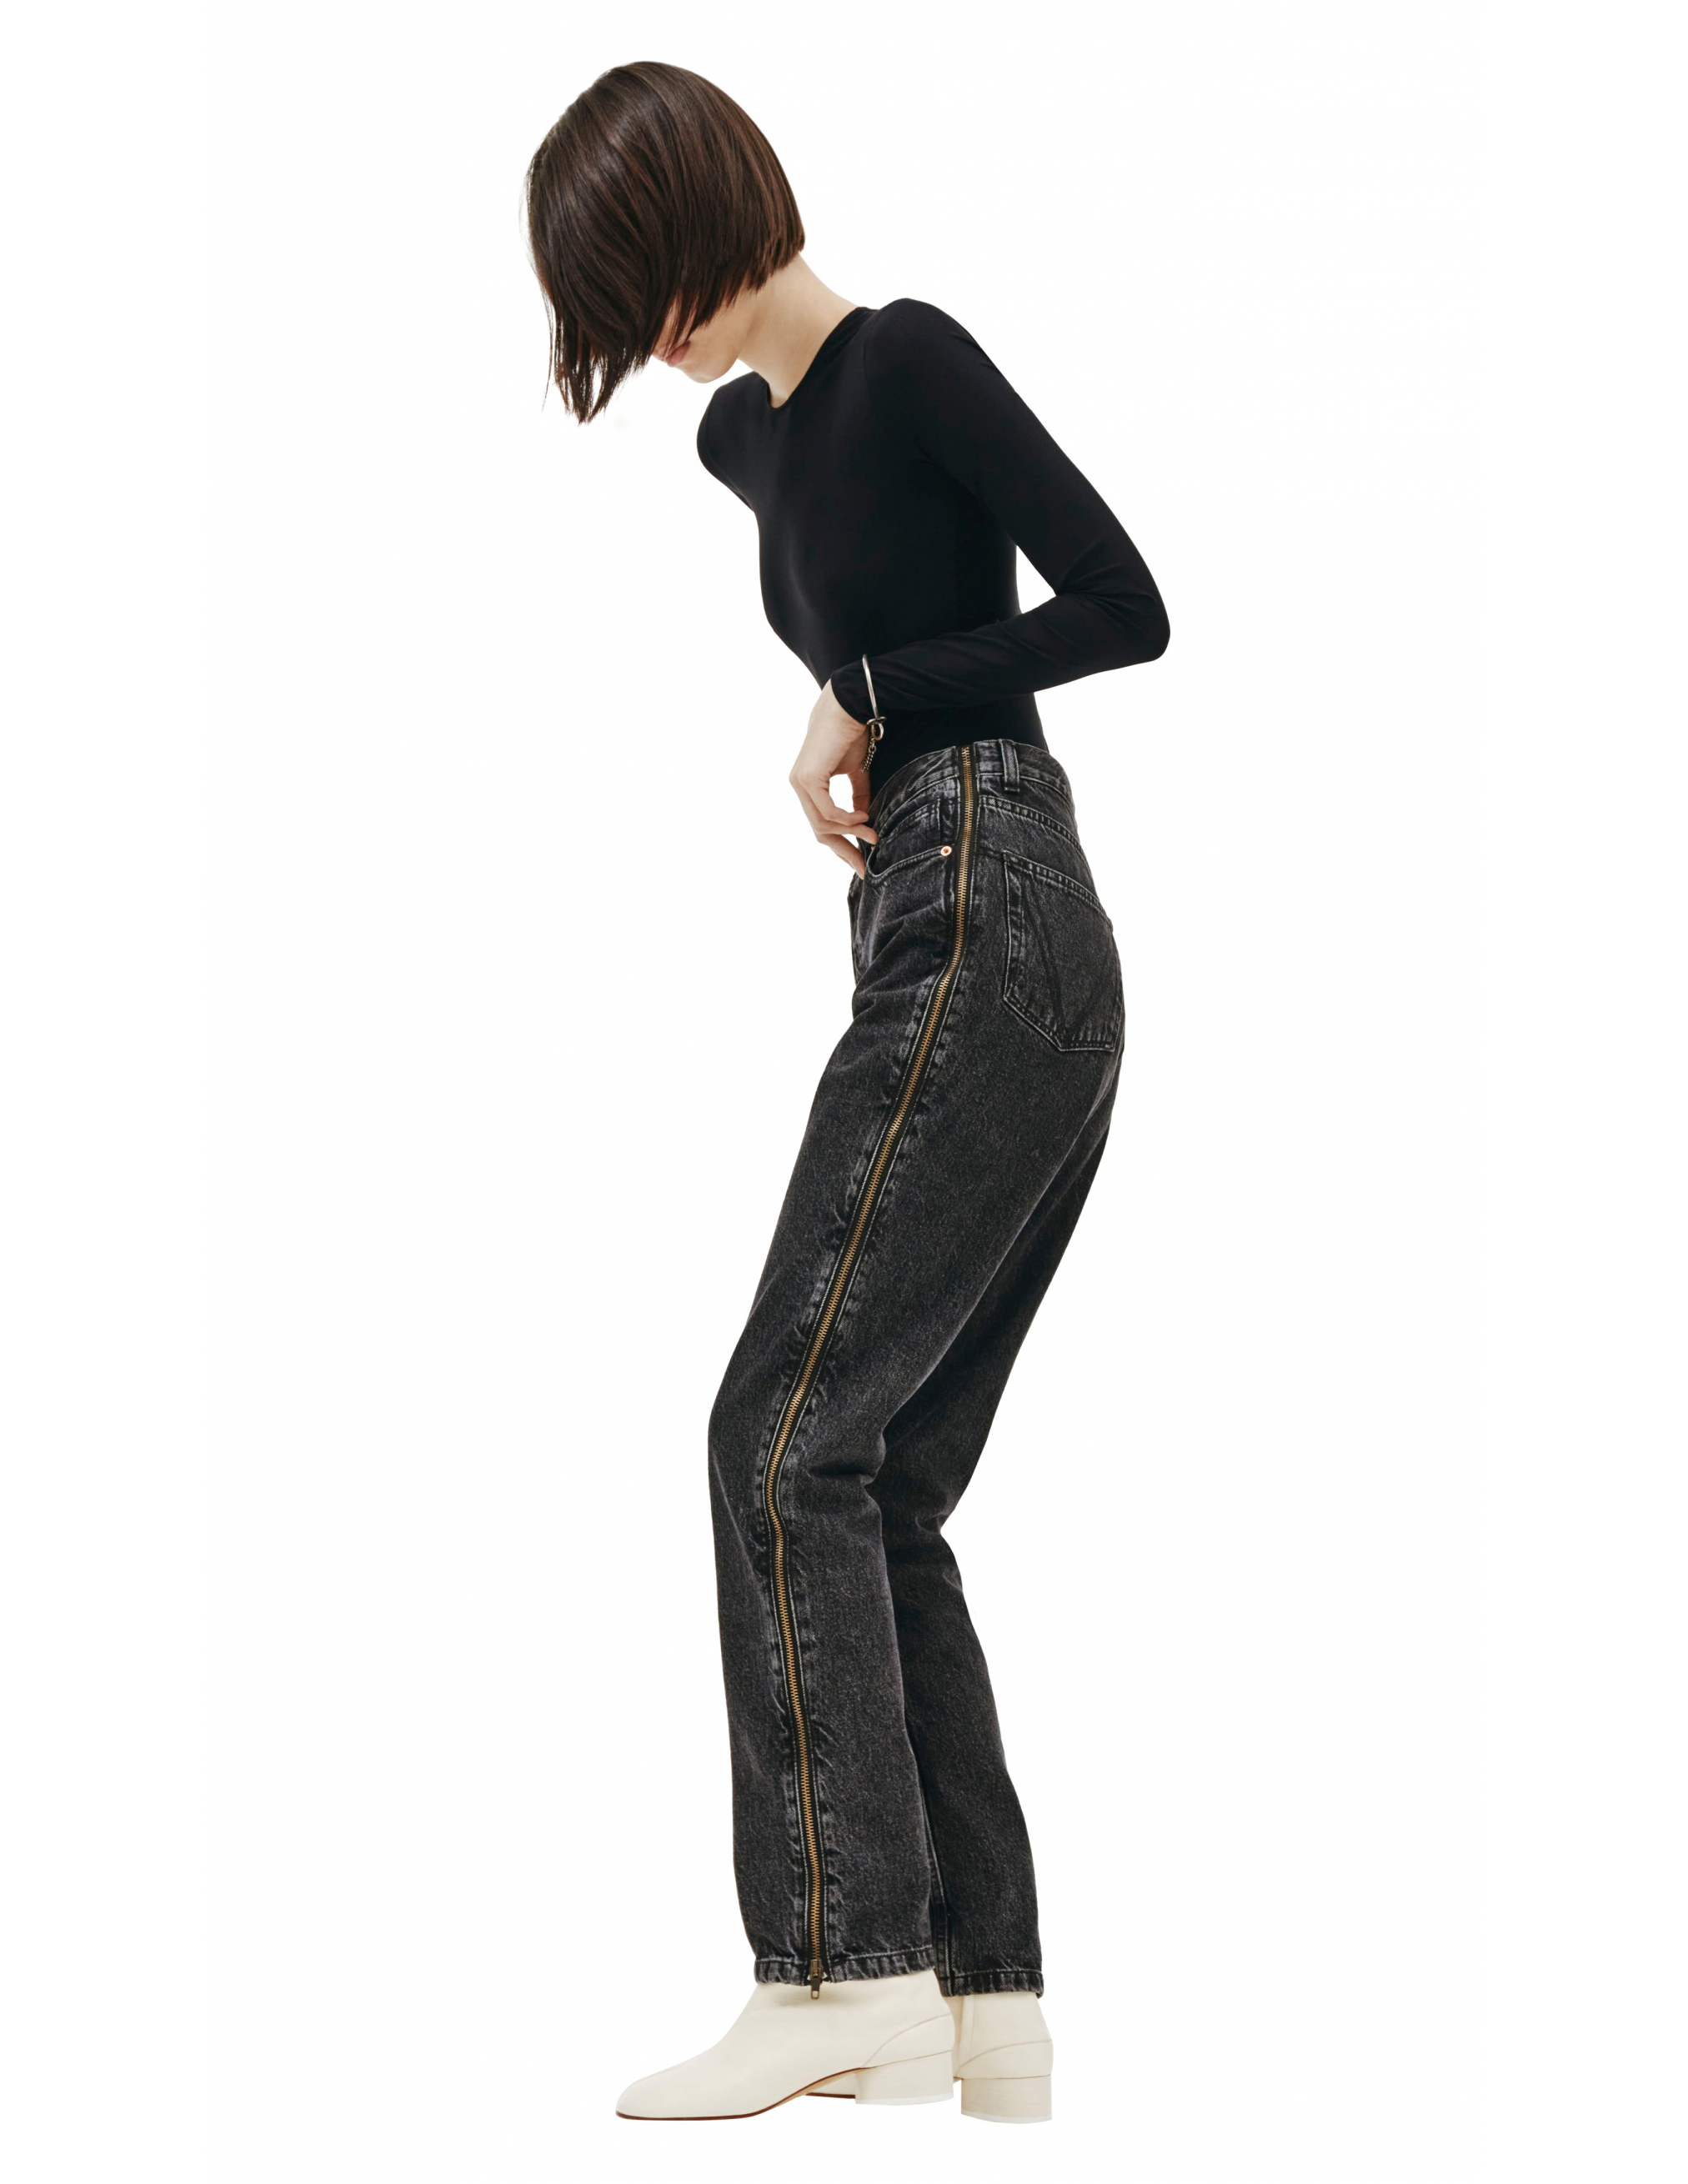 Черные джинсы с молниями по бокам - Vetements SS20PA332/blk Фото 6